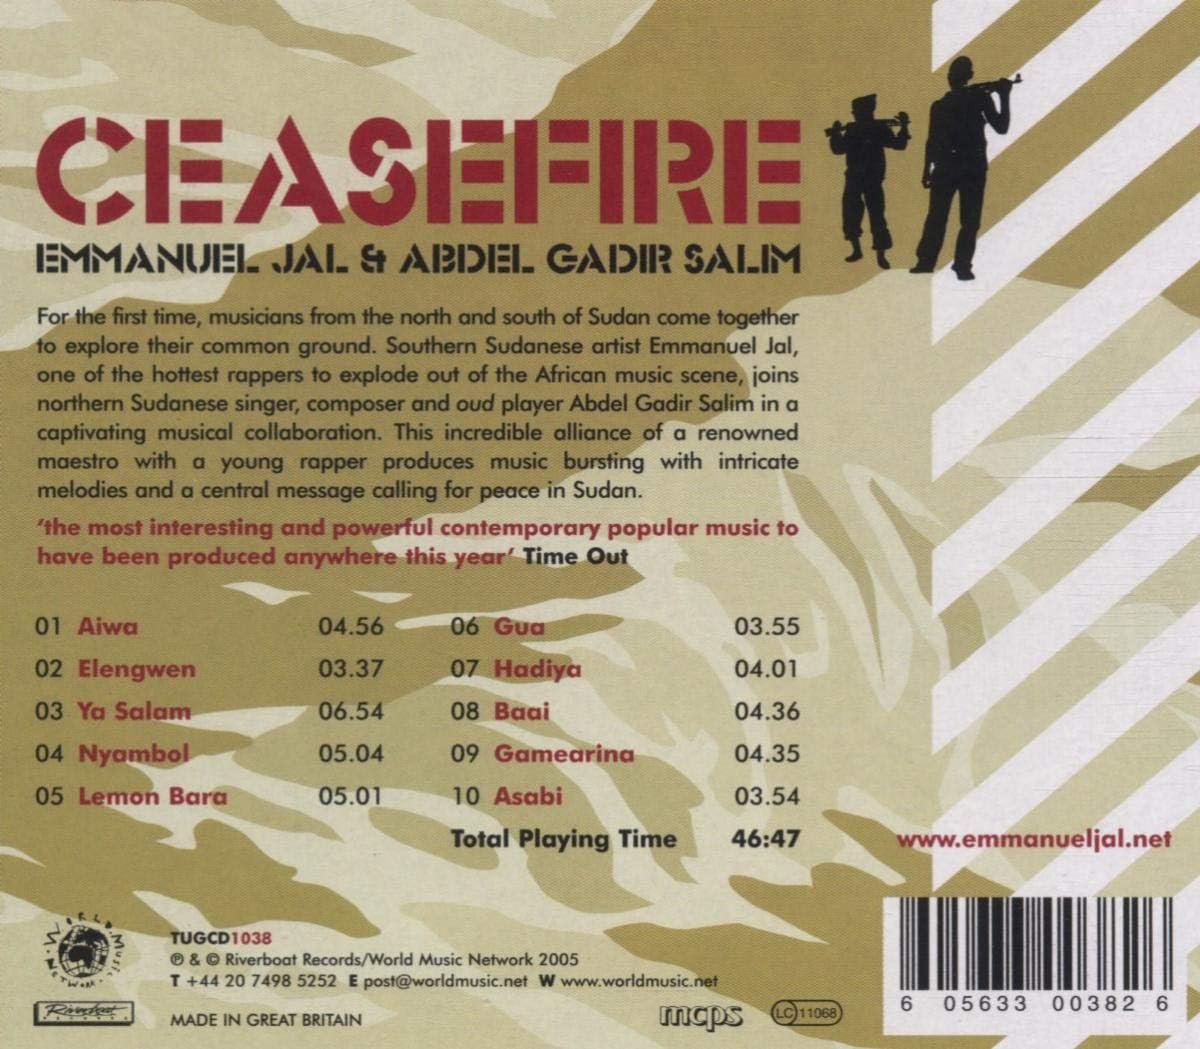 Ceasefire - Emmanuel Jal & Abdel Gadir Salim CD